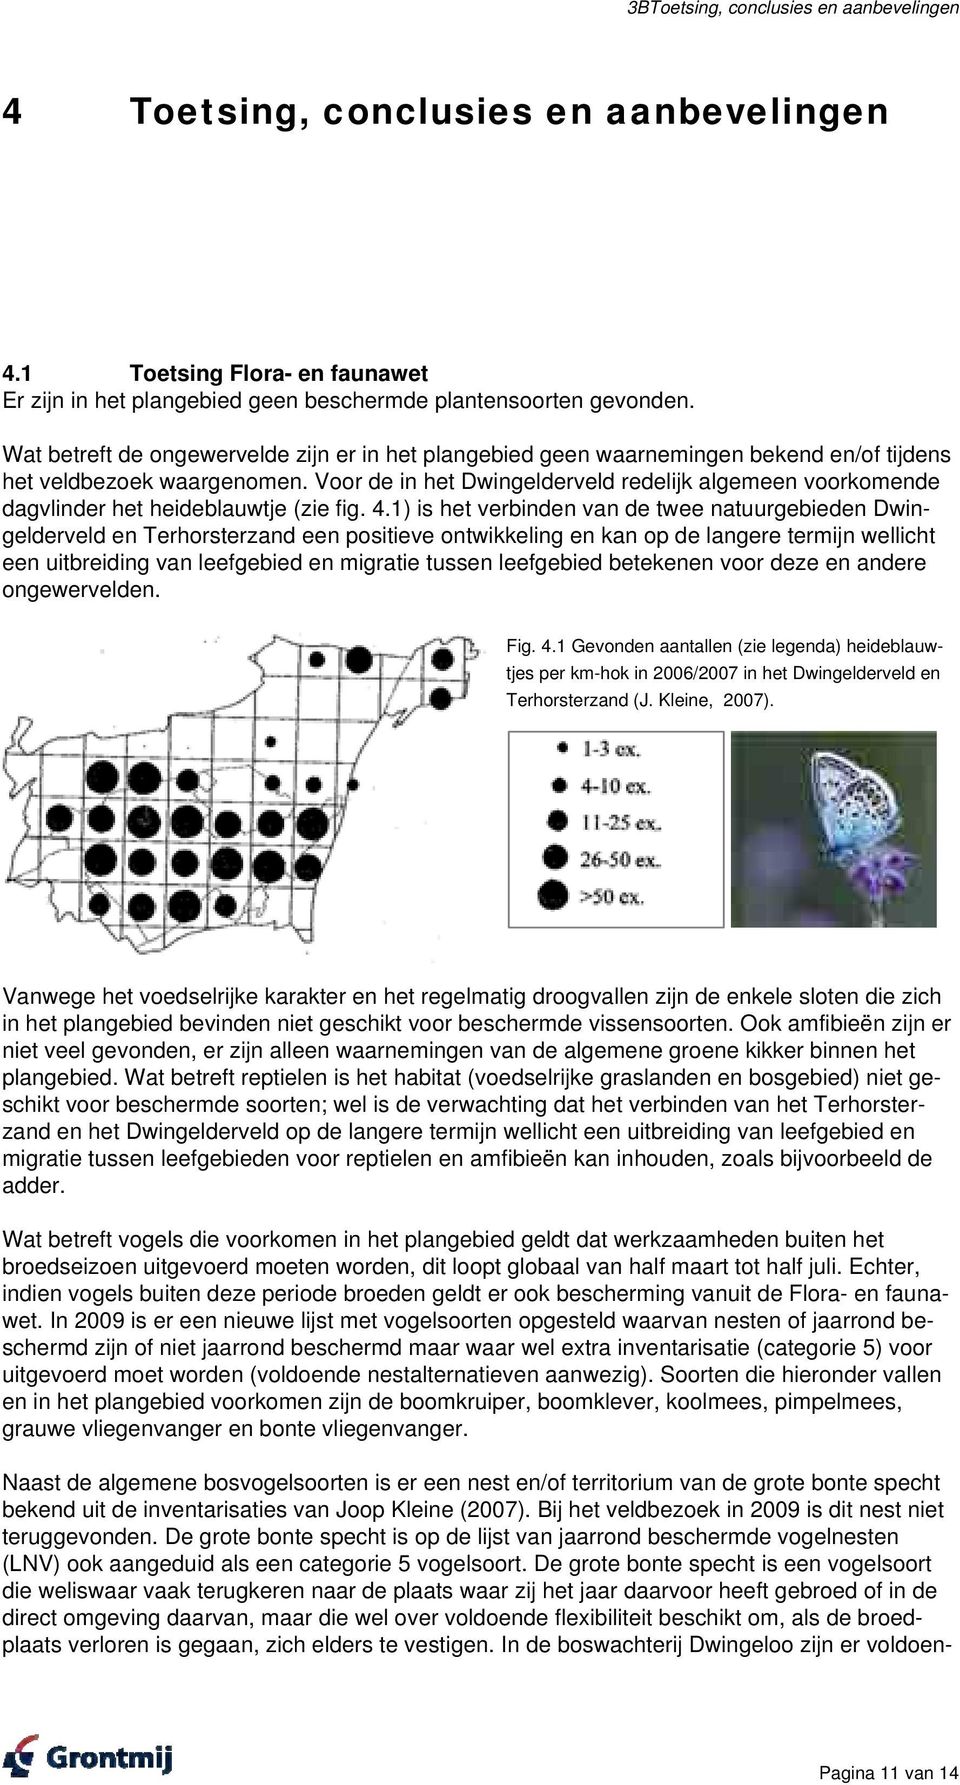 Voor de in het Dwingelderveld redelijk algemeen voorkomende dagvlinder het heideblauwtje (zie fig. 4.